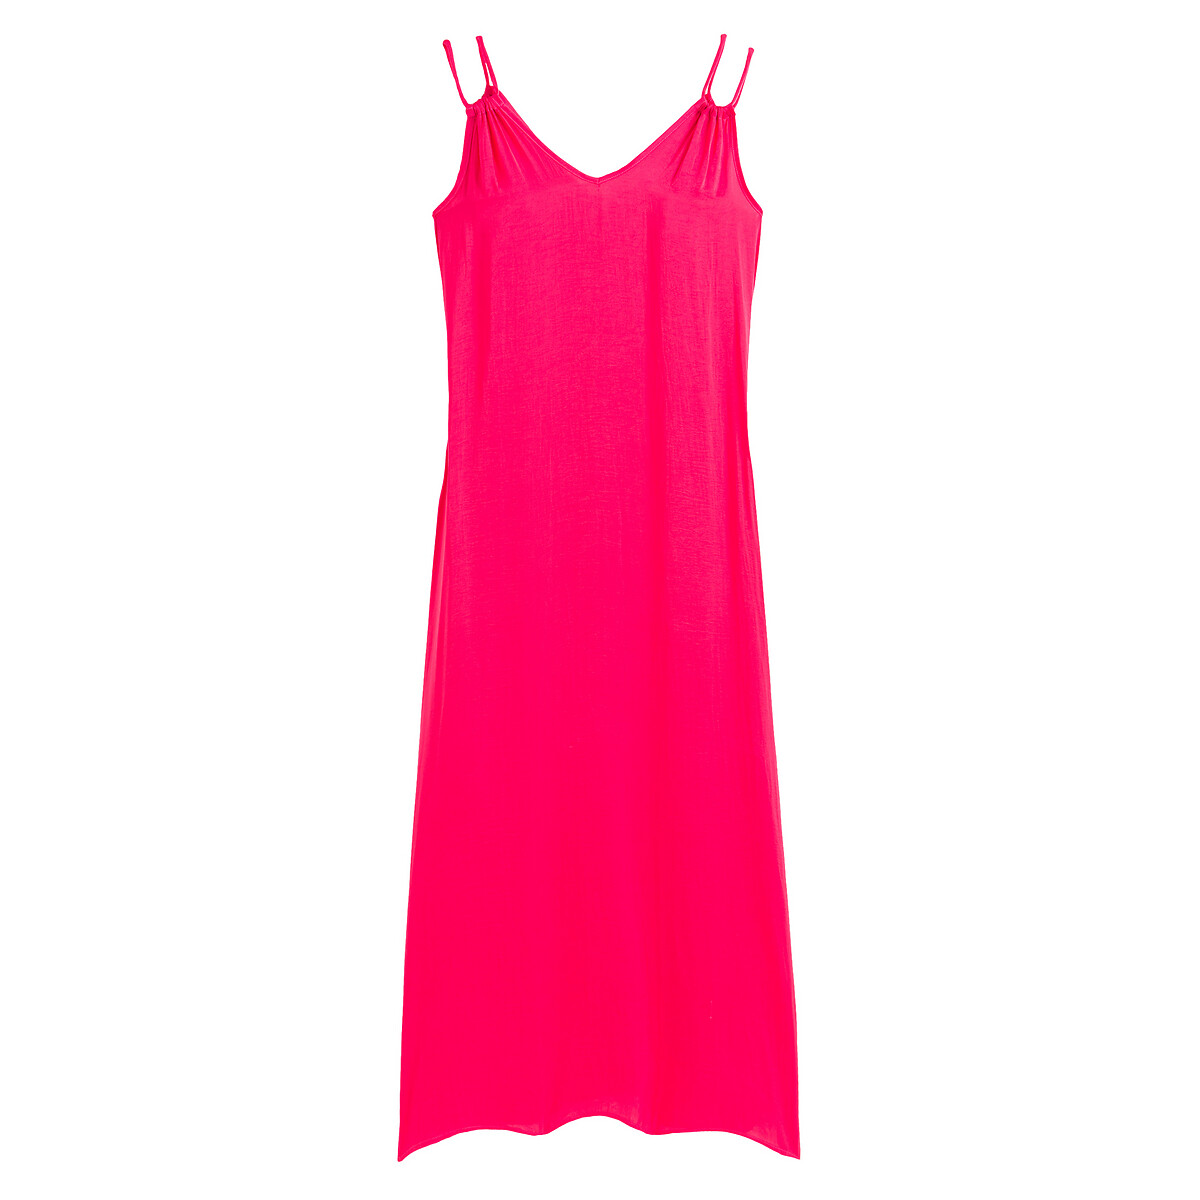 Платье Для загорания длинное тонкие бретели 36 (FR) - 42 (RUS) розовый